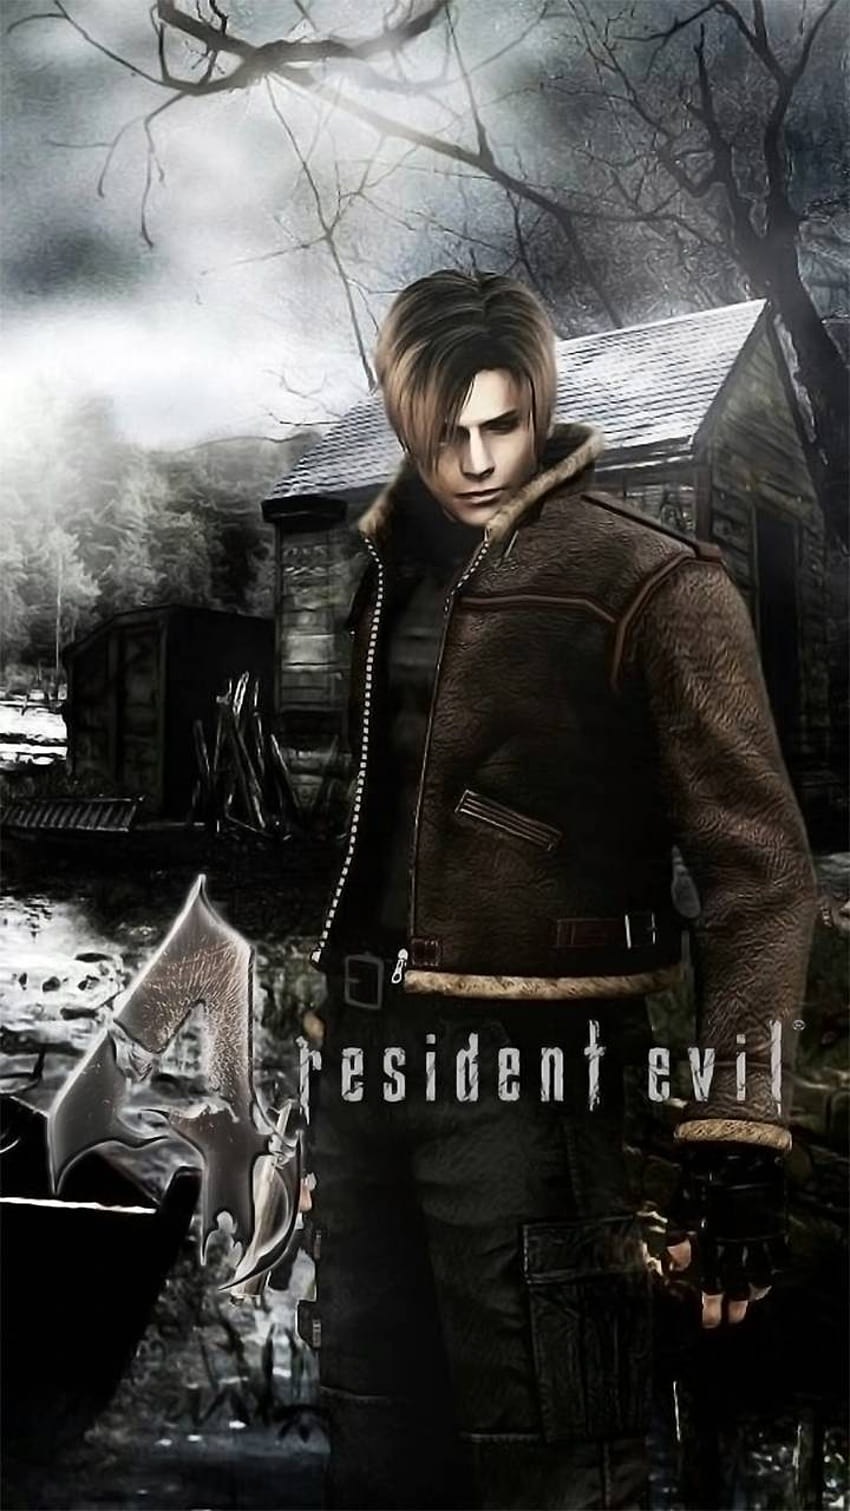 Resident Evil 4 Mobile: A Versão Oficial para Celular - Adeh Mobile